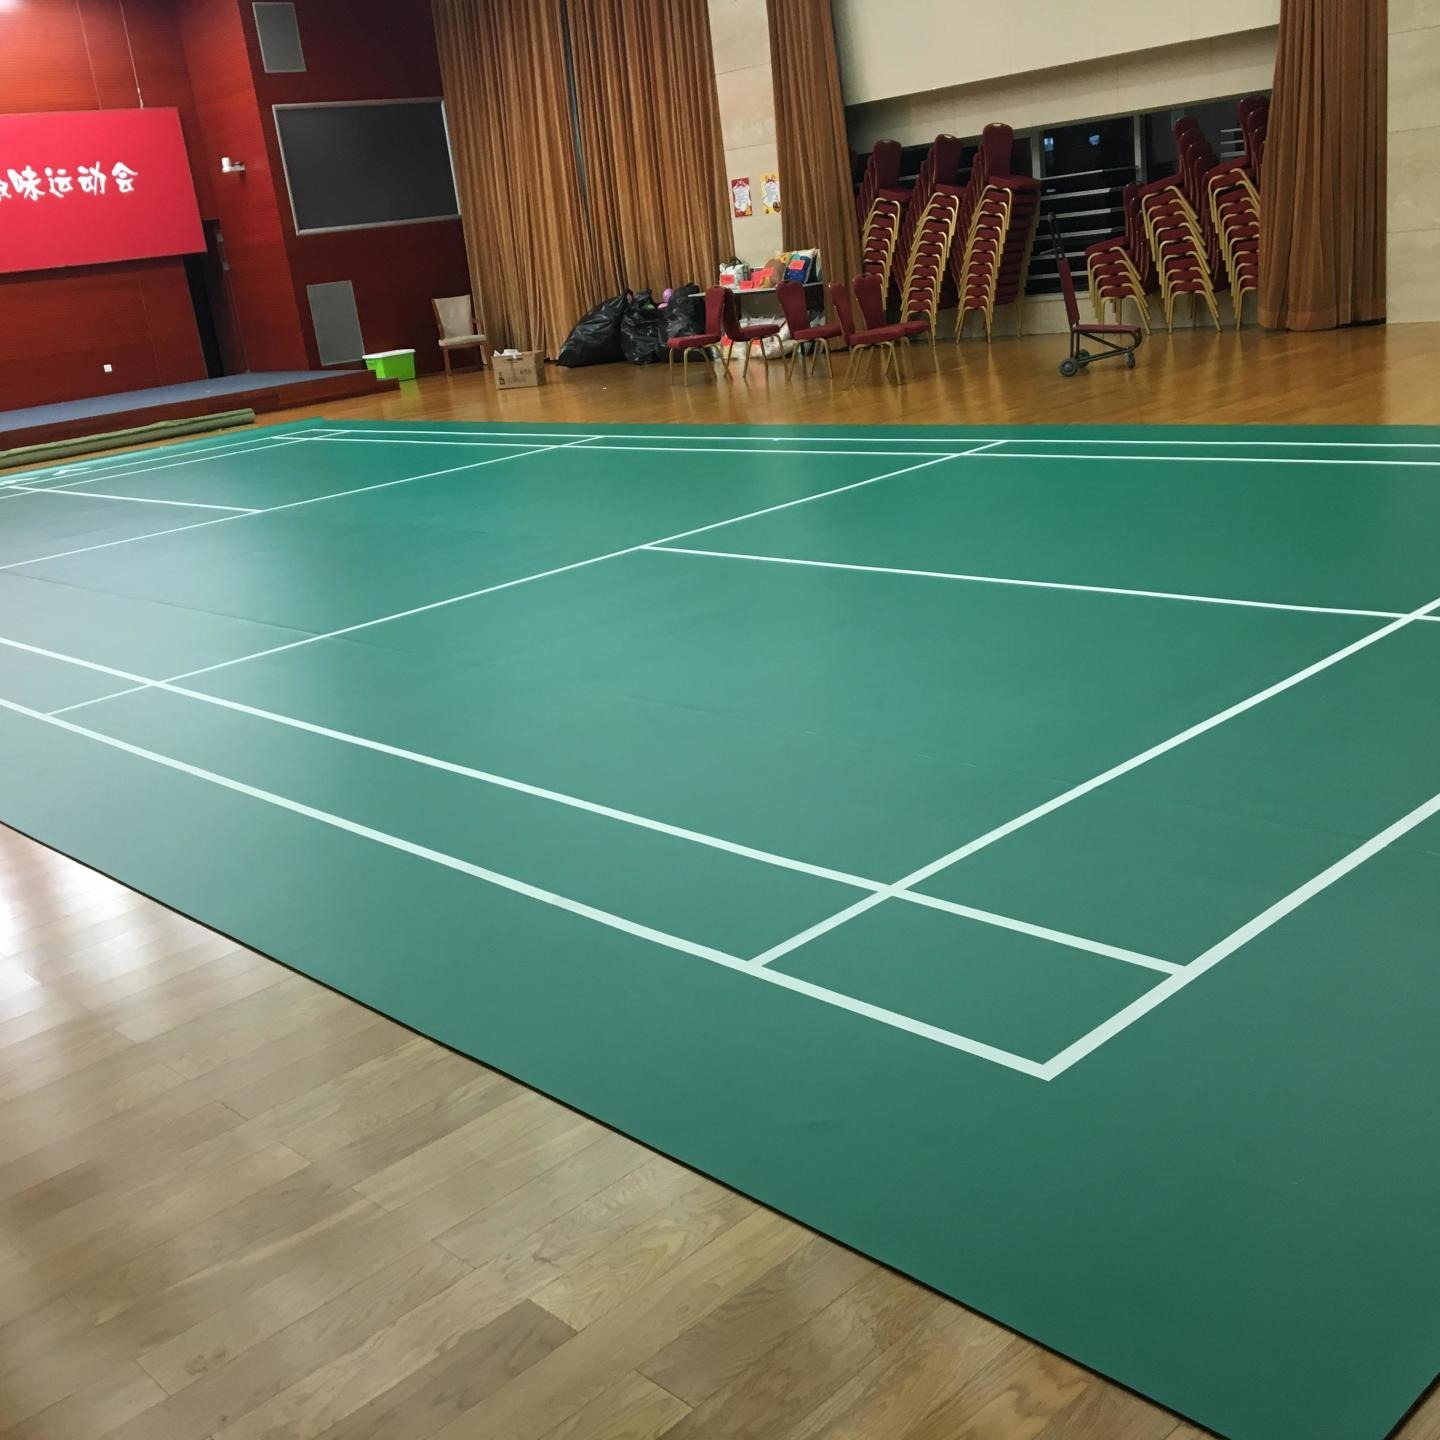 会泽篮球场PVC塑胶地板 游乐场PVC塑胶地板 会泽羽毛球PVC地板行业在未来将的展趋势